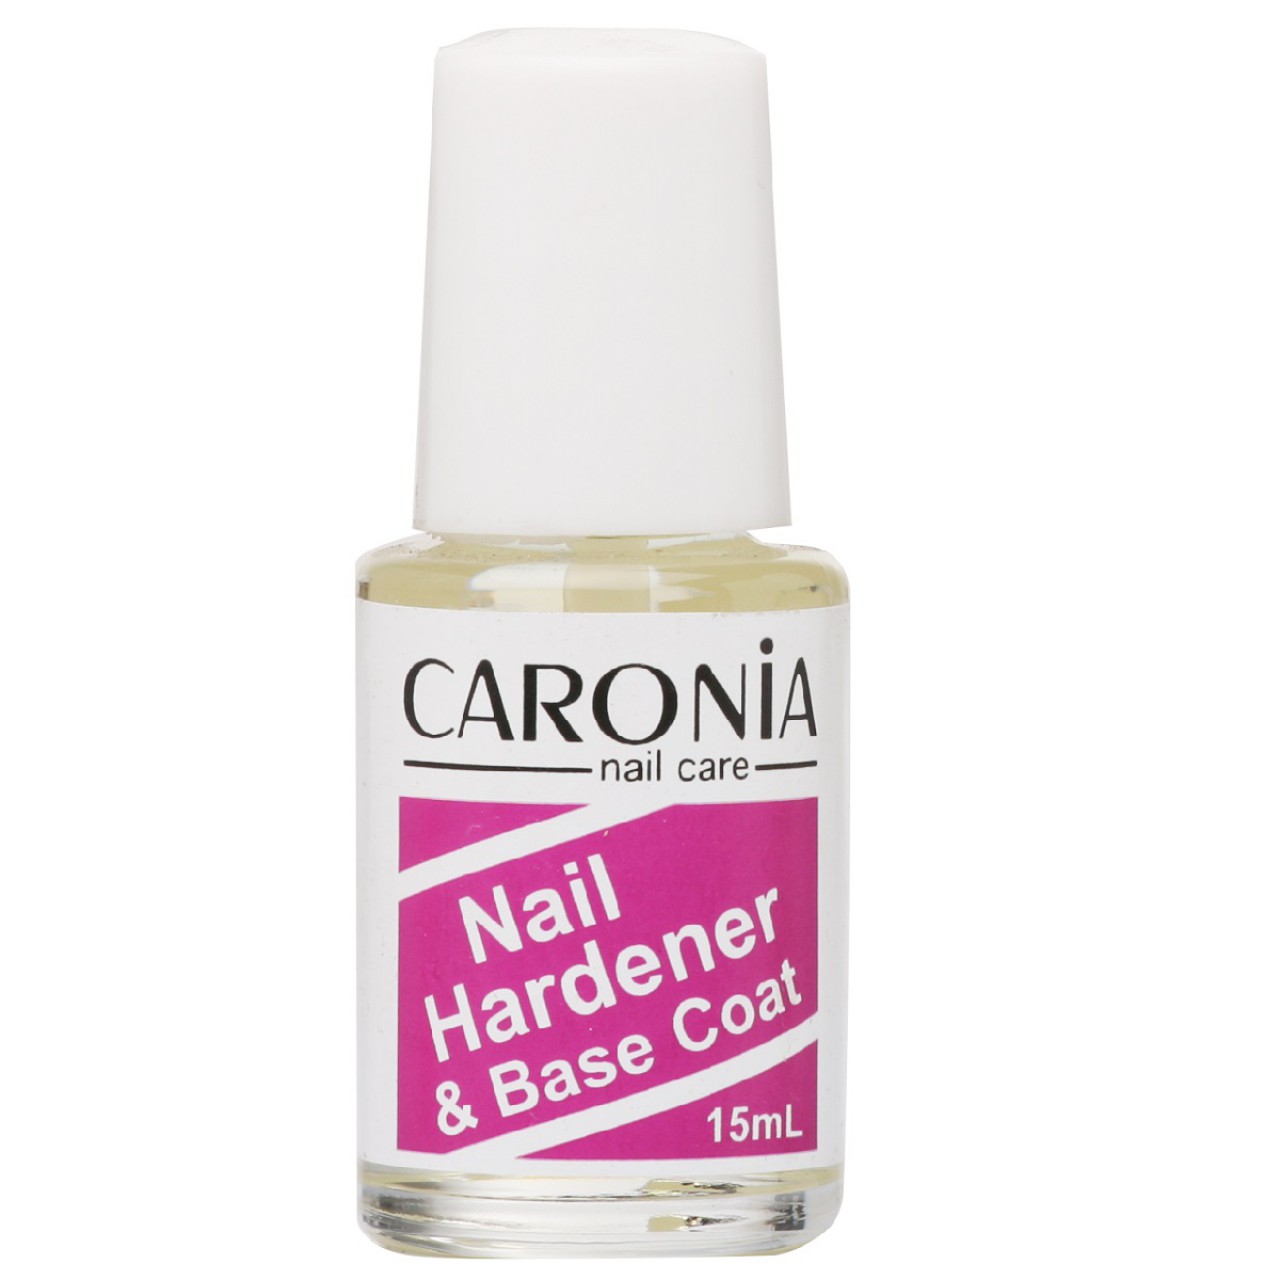 caronia nail hardener and base coat 15ml